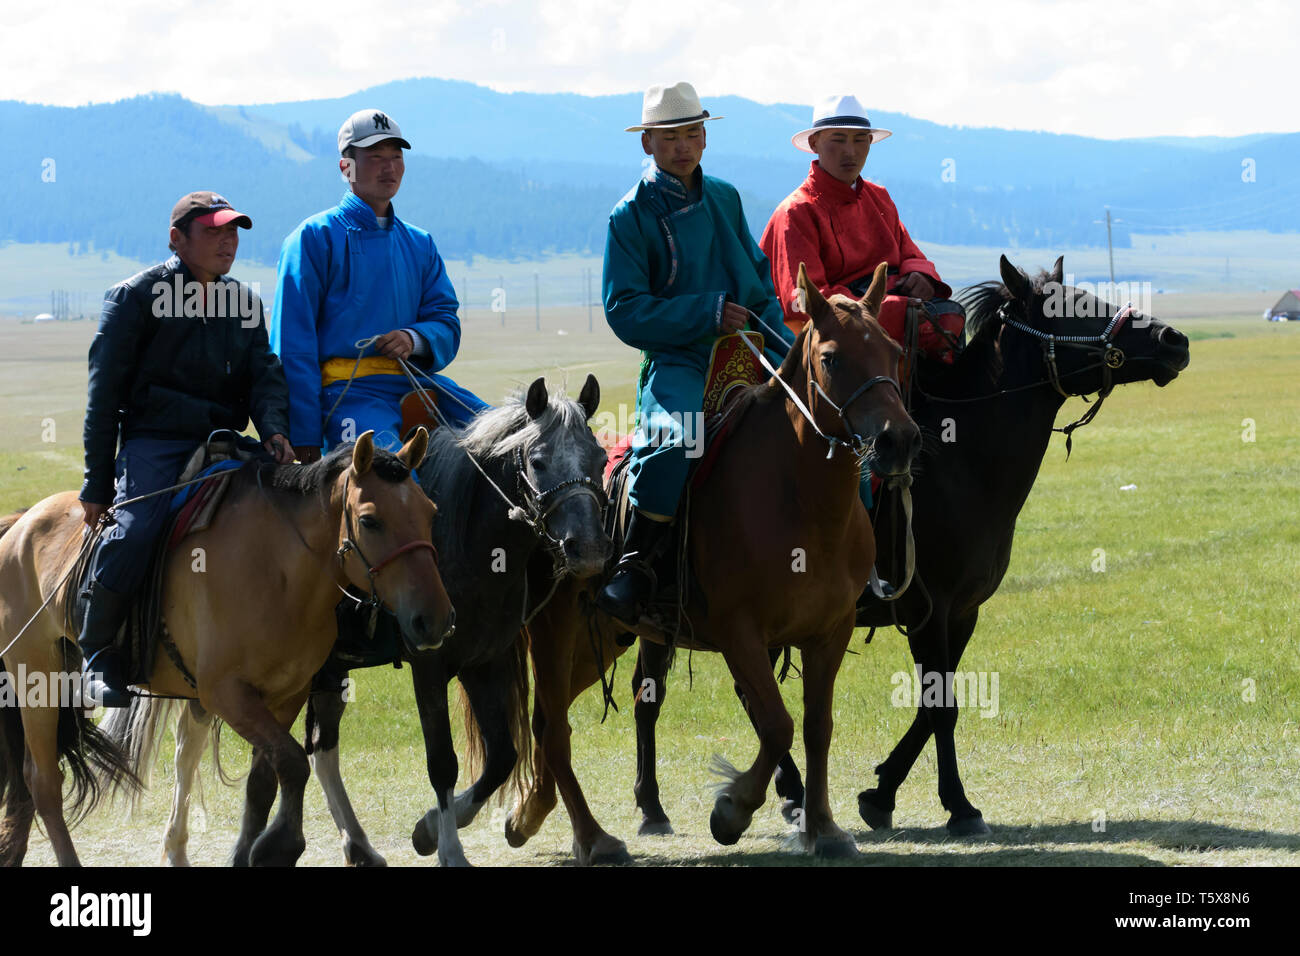 Festival Naadam à Khatgal, la Mongolie. Les jeunes horseriders dans leurs vêtements colorés Banque D'Images